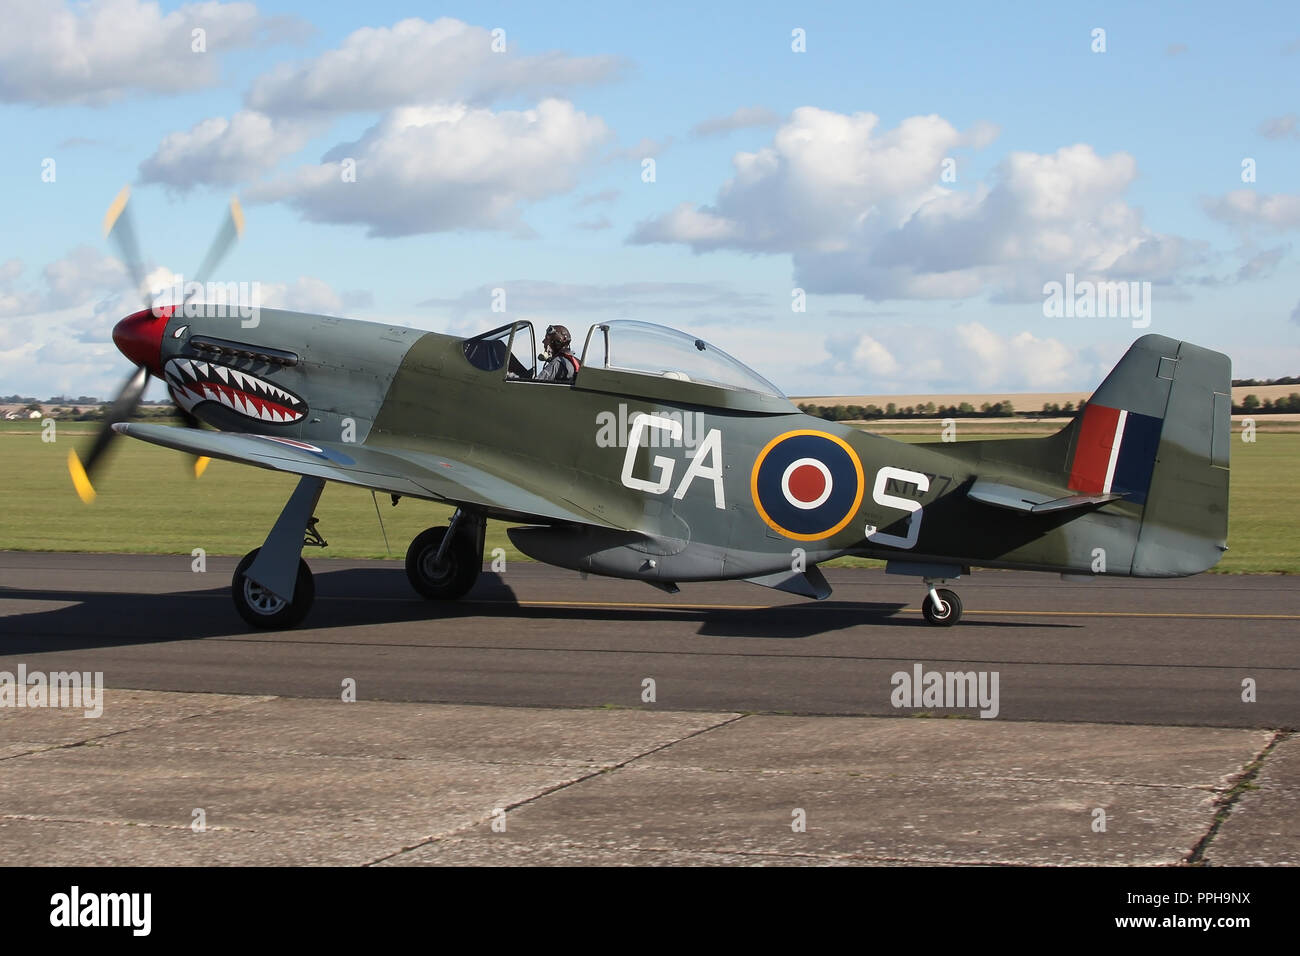 Die norwegische Betrieben P-51D Mustang in RAF-Markierungen in Nach einem Air Display in Duxford, Cambridgeshire Rollens betrieben. Stockfoto